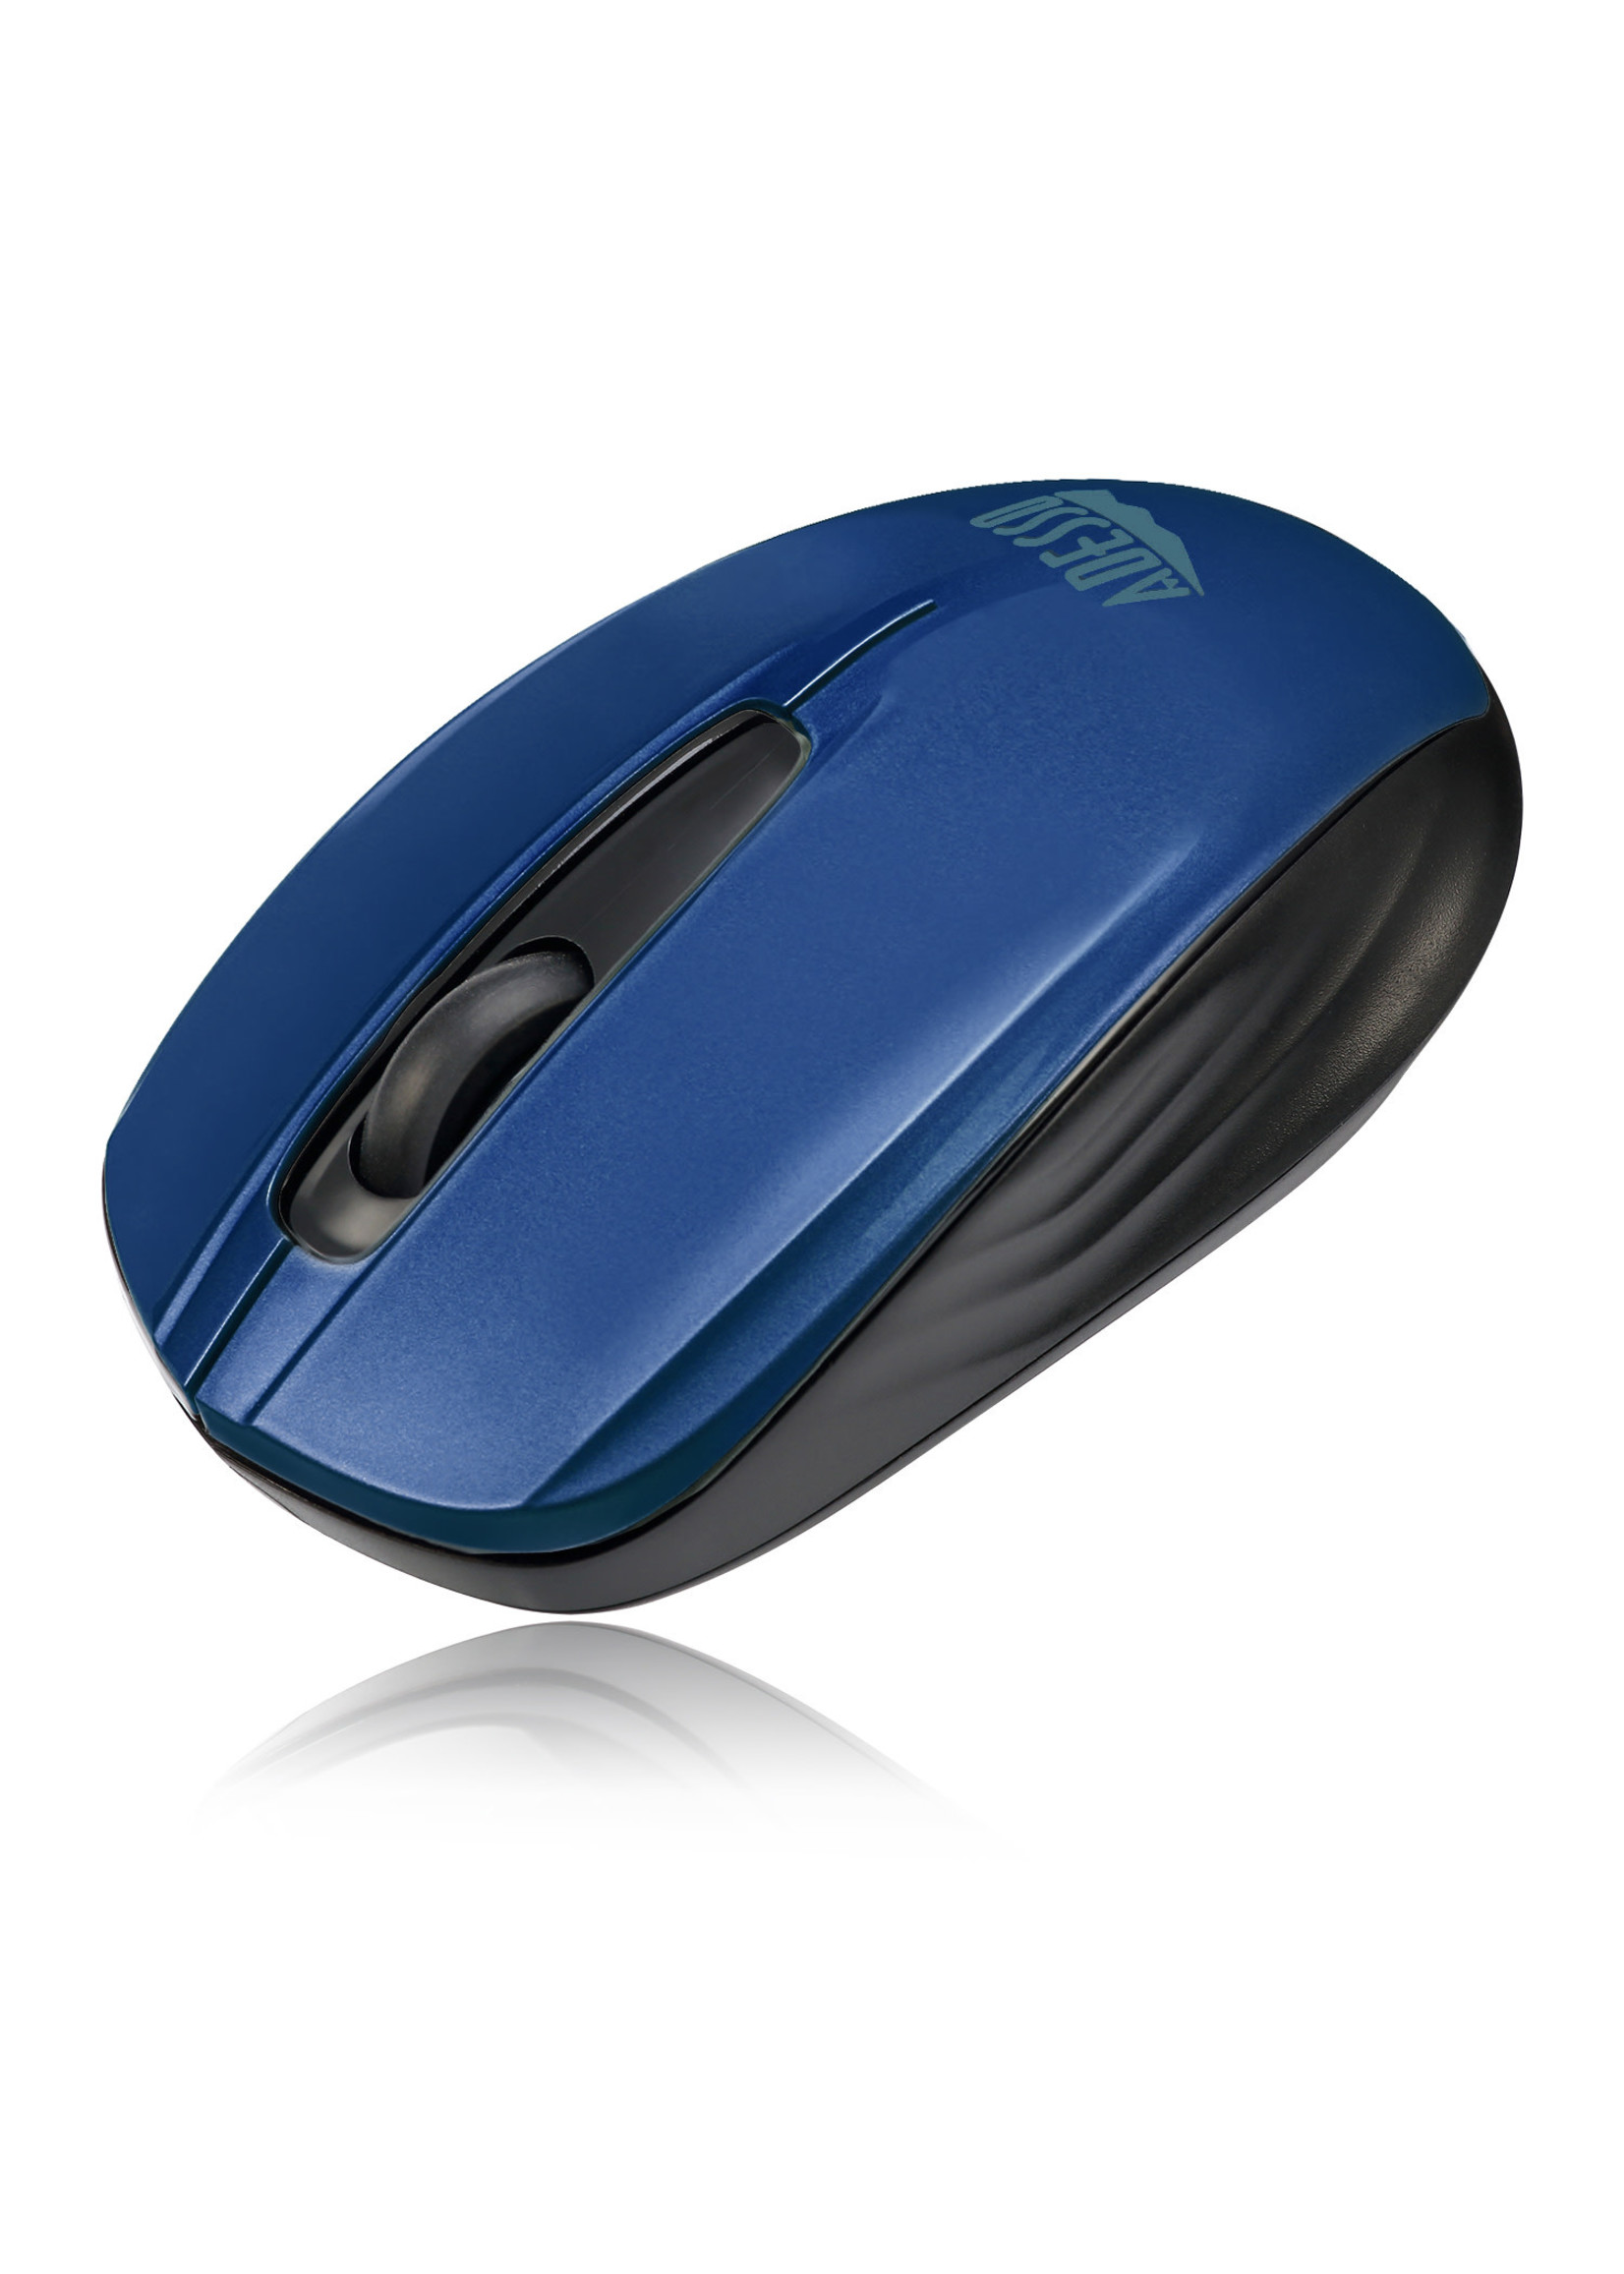 Adesso Adesso Wireless Mini mouse